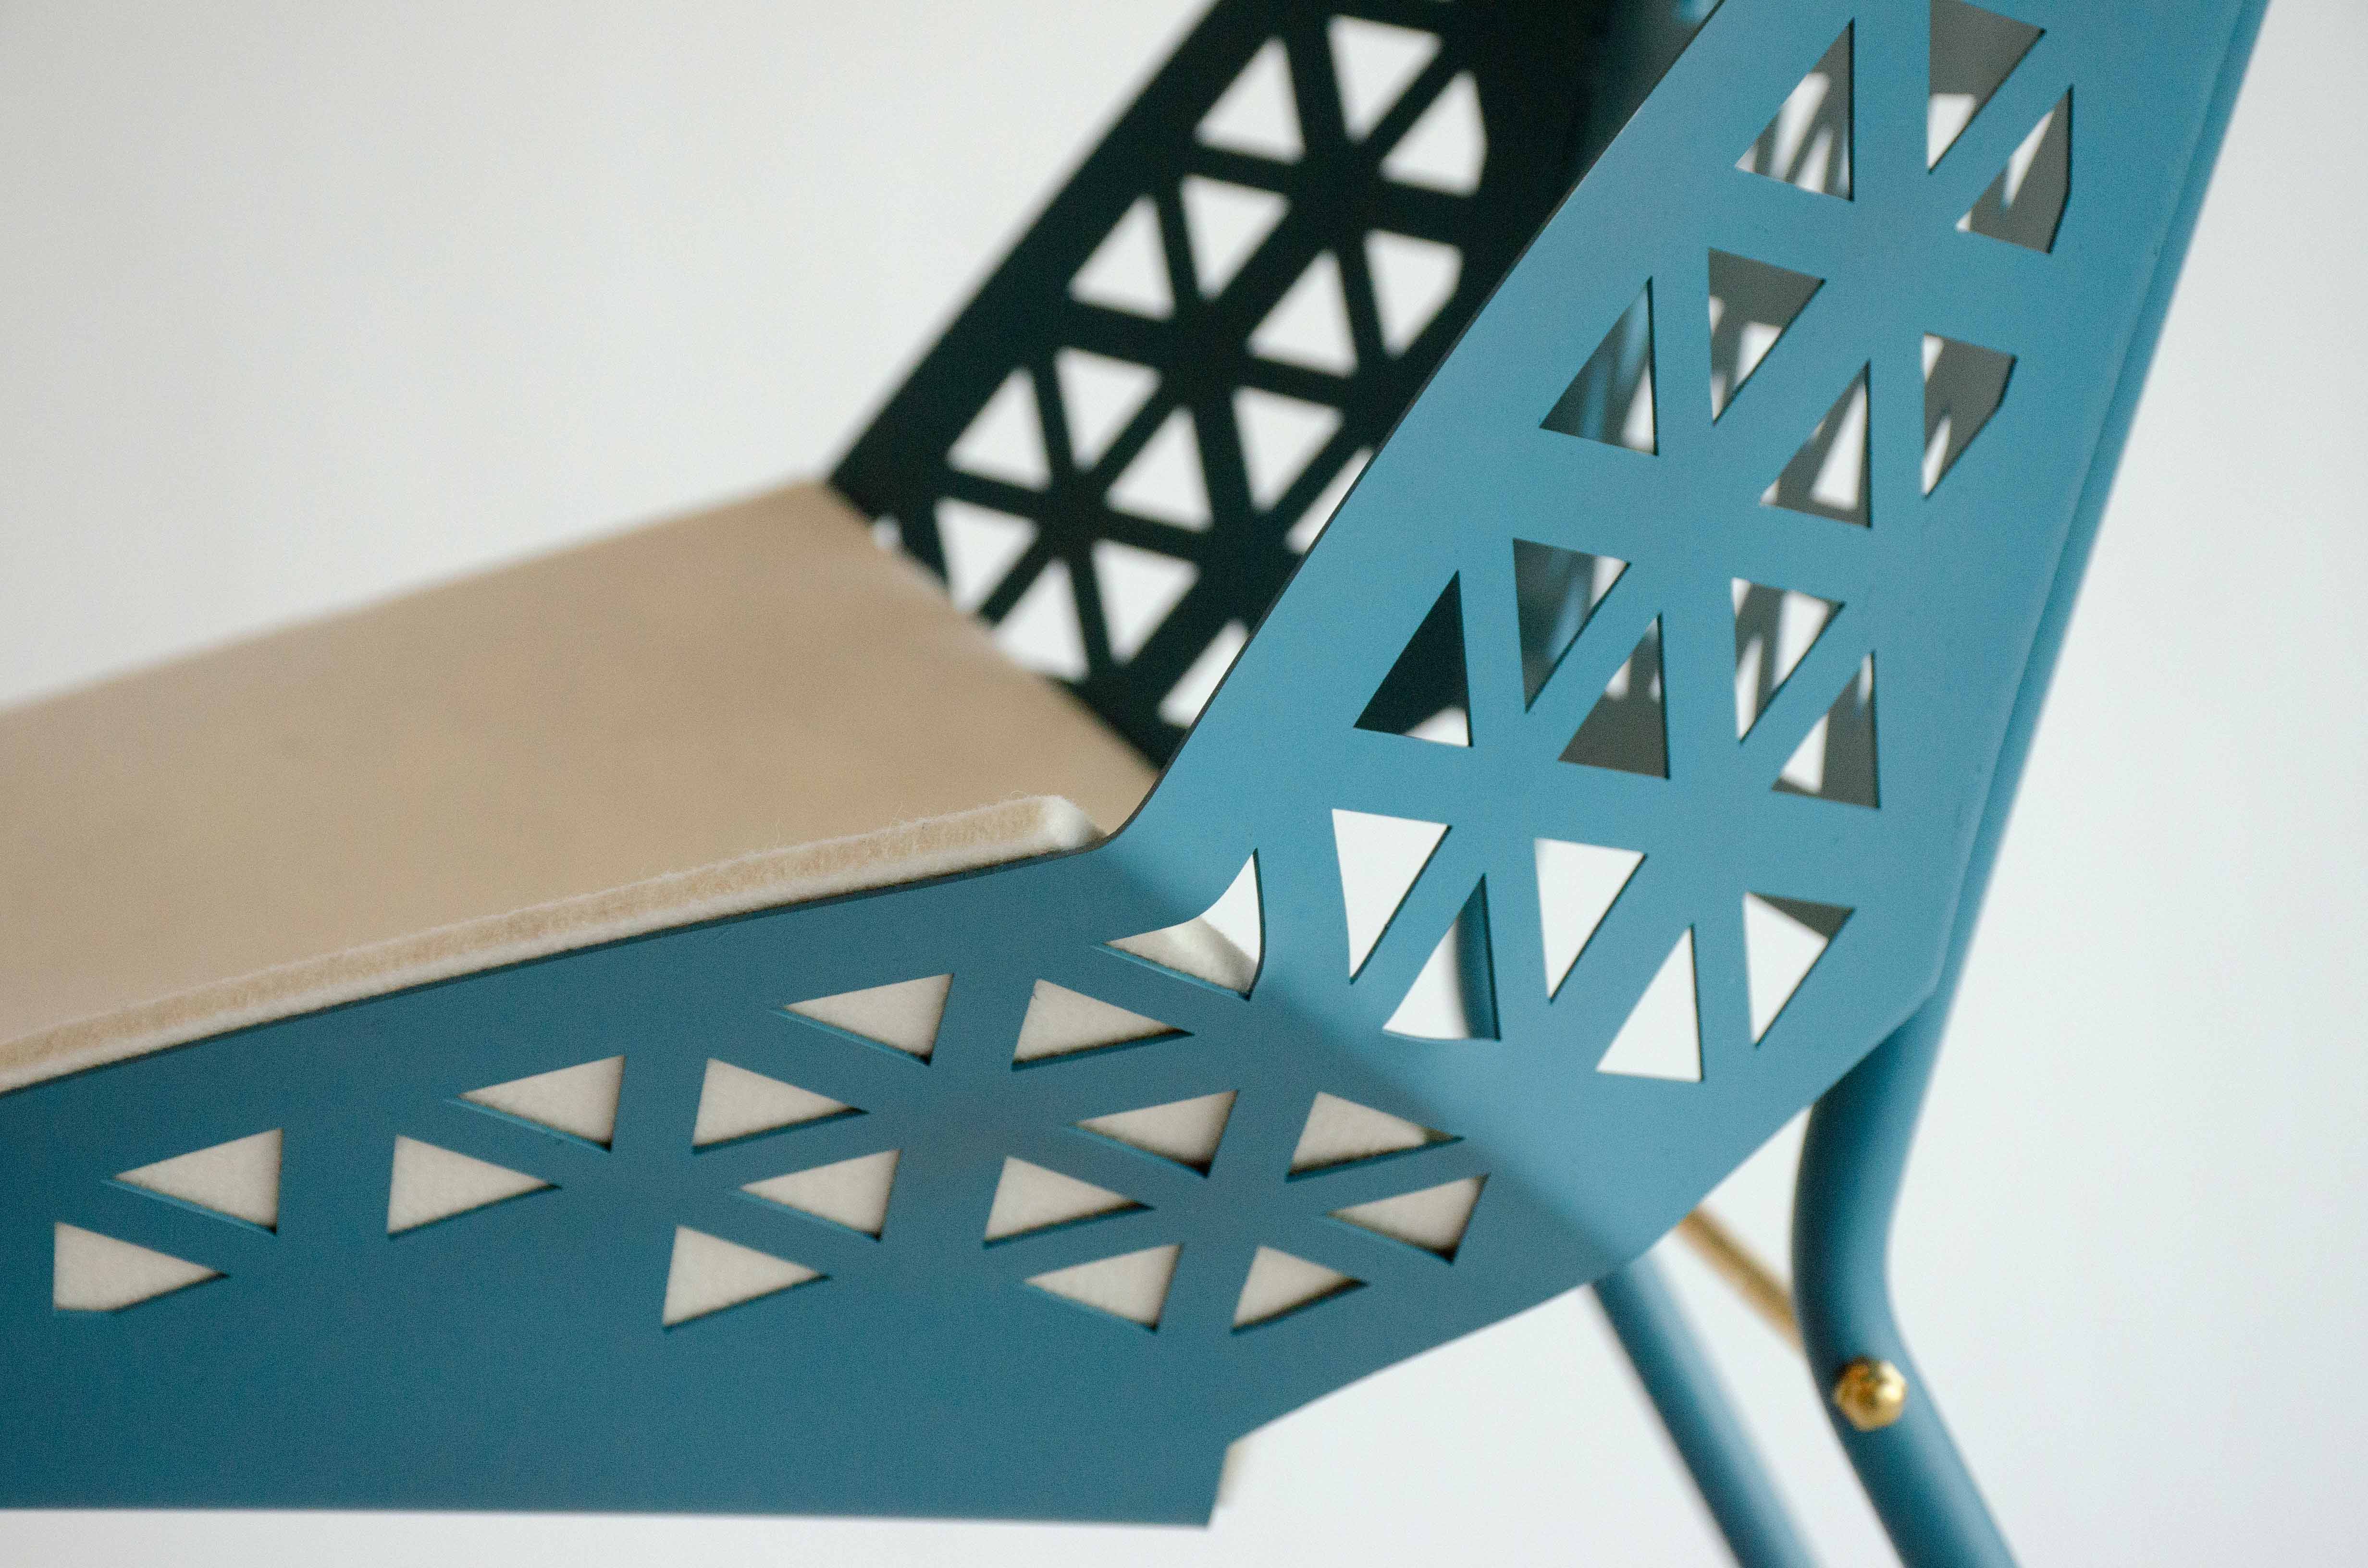 evolve chair design detail